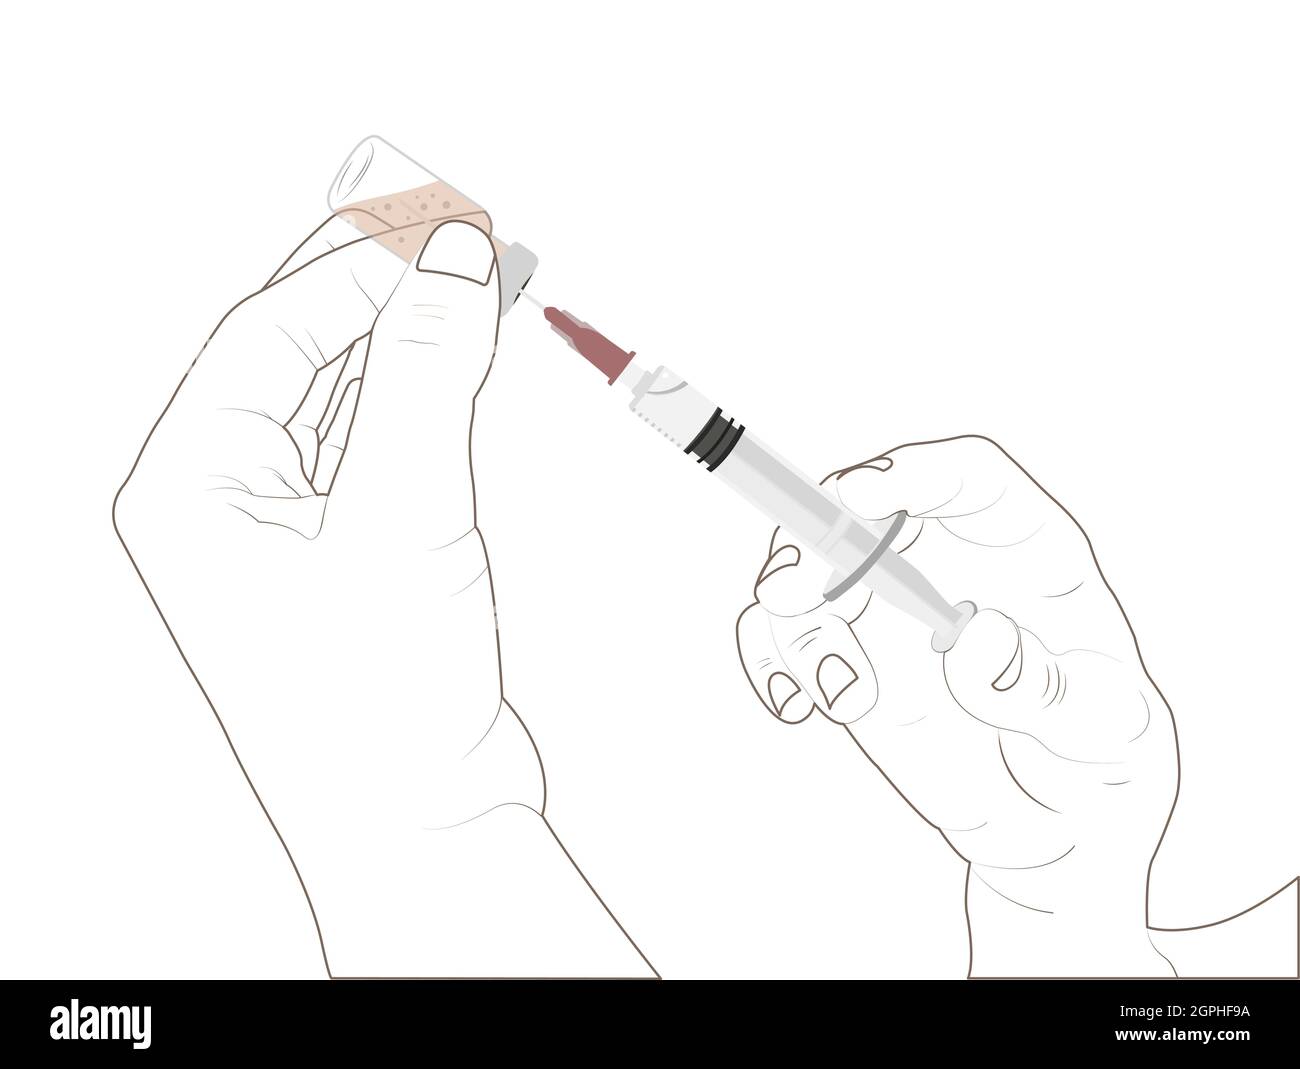 Mano della signora che si prepara a vaccinare, mano della donna mentre vaccina. Illustrazione dello stock vettoriale di contorno Illustrazione Vettoriale